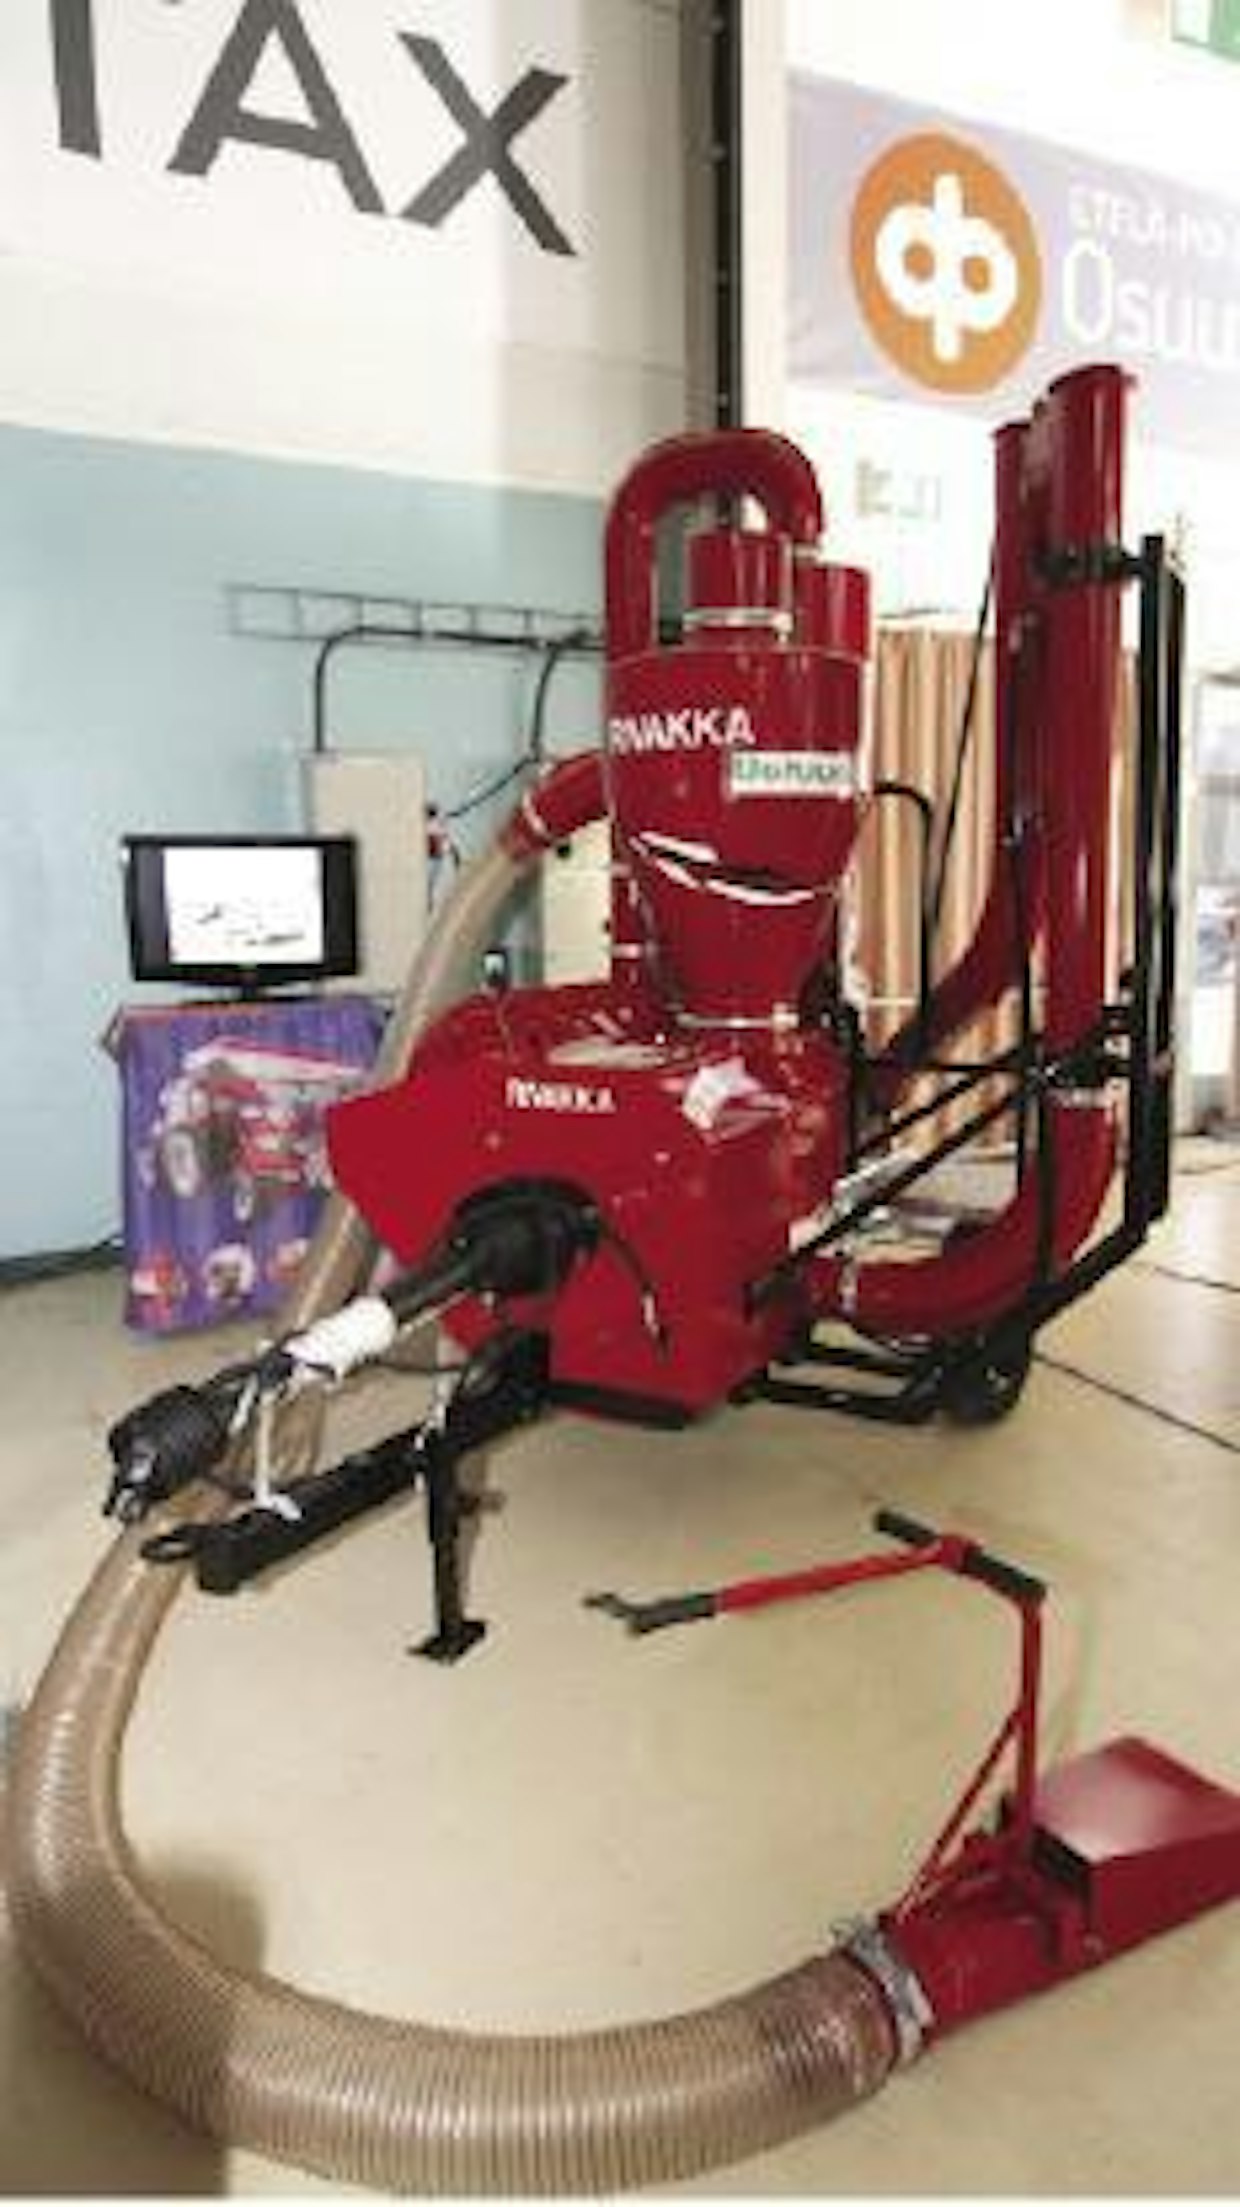 Rivakka-traktorilietso on tehokas laite viljan ja pelletin siirtoon. Maksimaalinen viljansiirtoteho on 45 tonnia tunnissa ja puhallusetäisyyttä voi olla jopa 80 metriä. Tehoa tarvitaan kuitenkin minimissään 120 hv.